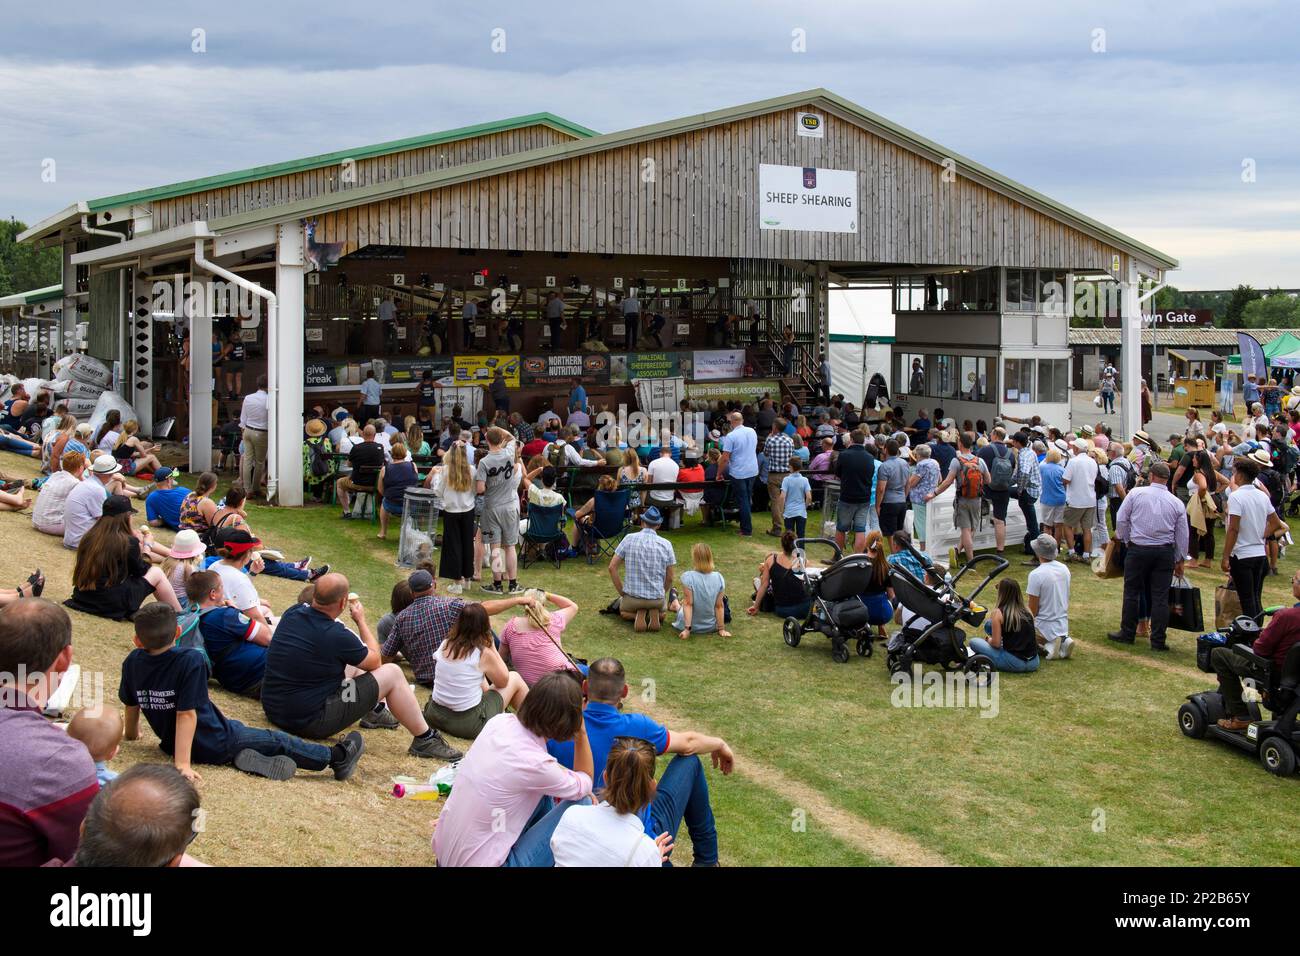 Des foules de visiteurs regardent les haveuses concourir (événement de divertissement traditionnel en plein air dans la grange de hangar) - Great Yorkshire Show, Harrogate, Angleterre, Royaume-Uni. Banque D'Images